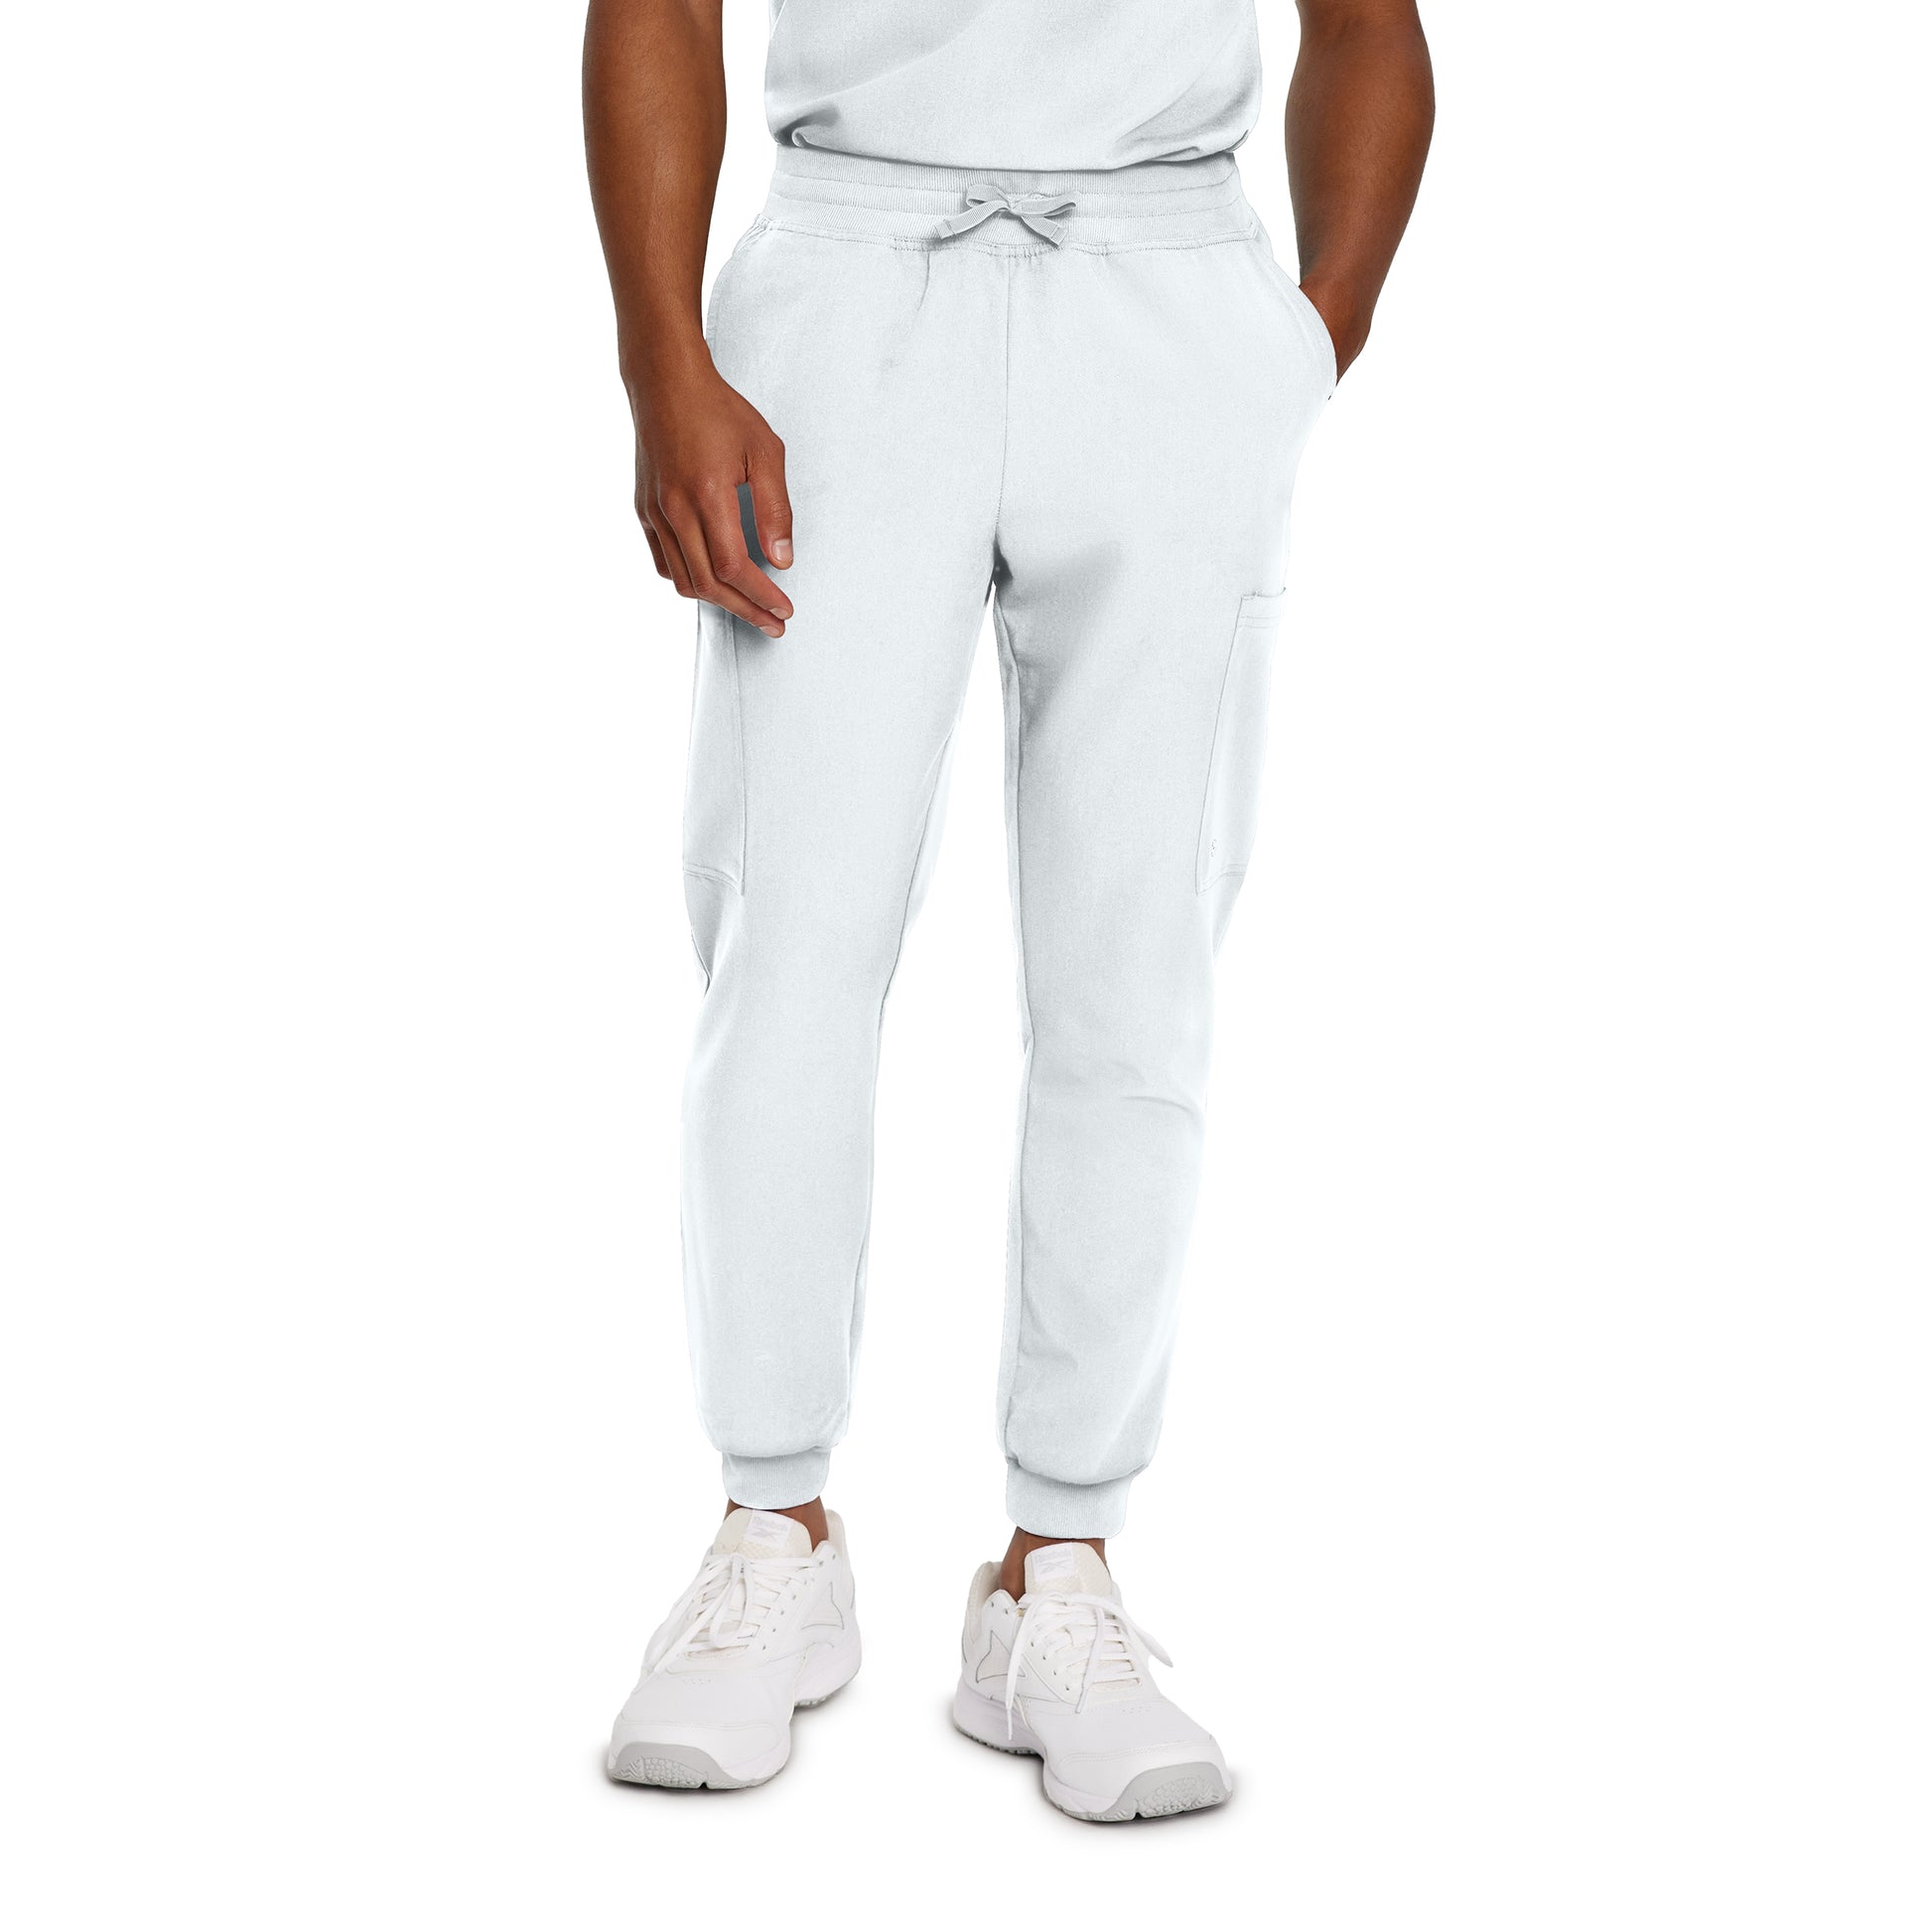 Pantalon de travail pour personel de la santé White Cross #222 blanc